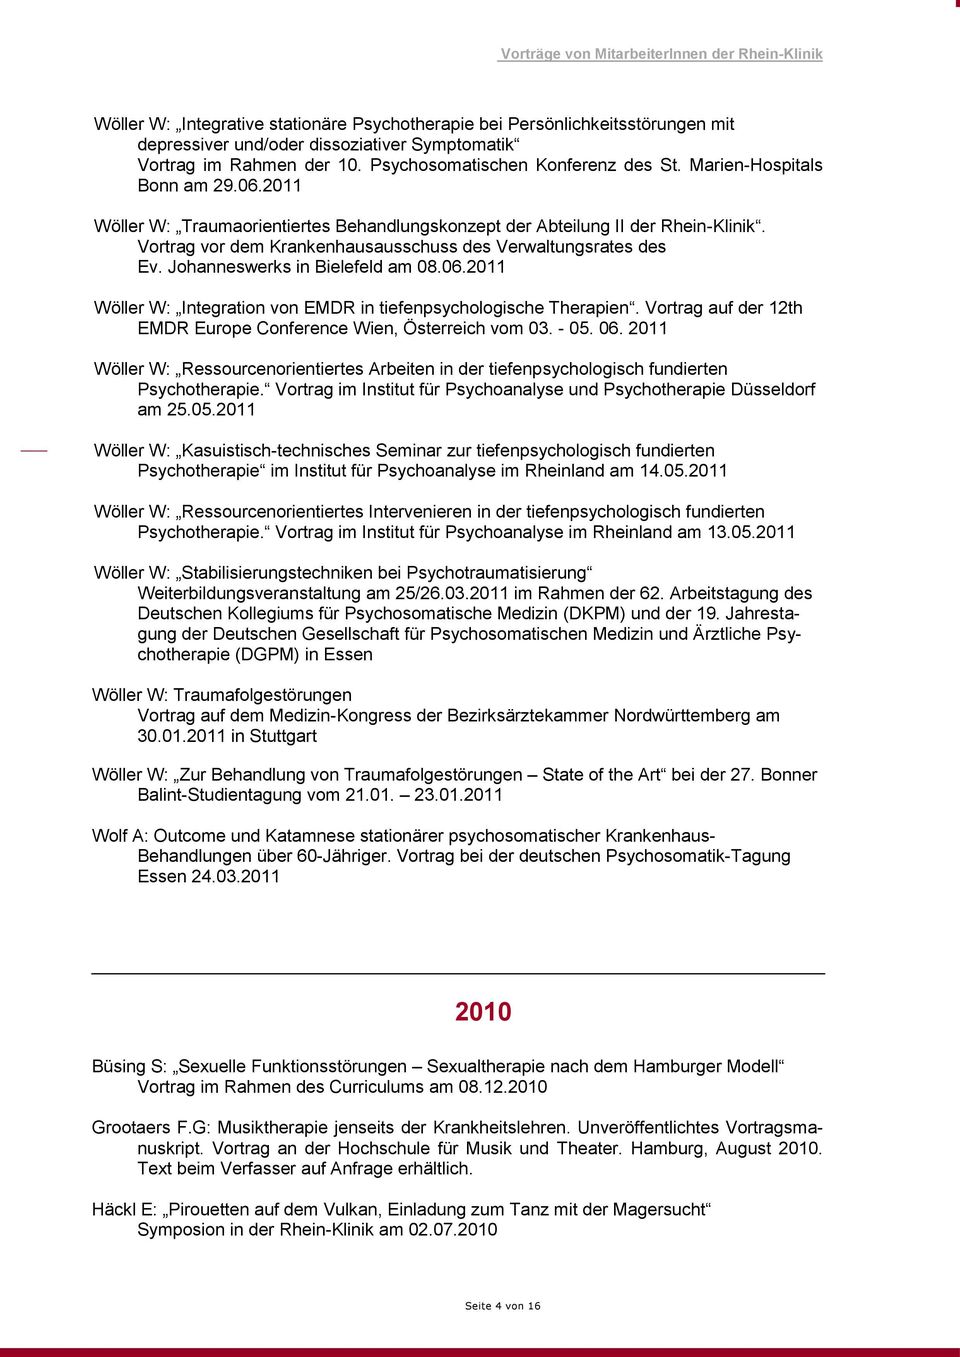 Johanneswerks in Bielefeld am 08.06.2011 Wöller W: Integration von EMDR in tiefenpsychologische Therapien. Vortrag auf der 12th EMDR Europe Conference Wien, Österreich vom 03. - 05. 06.